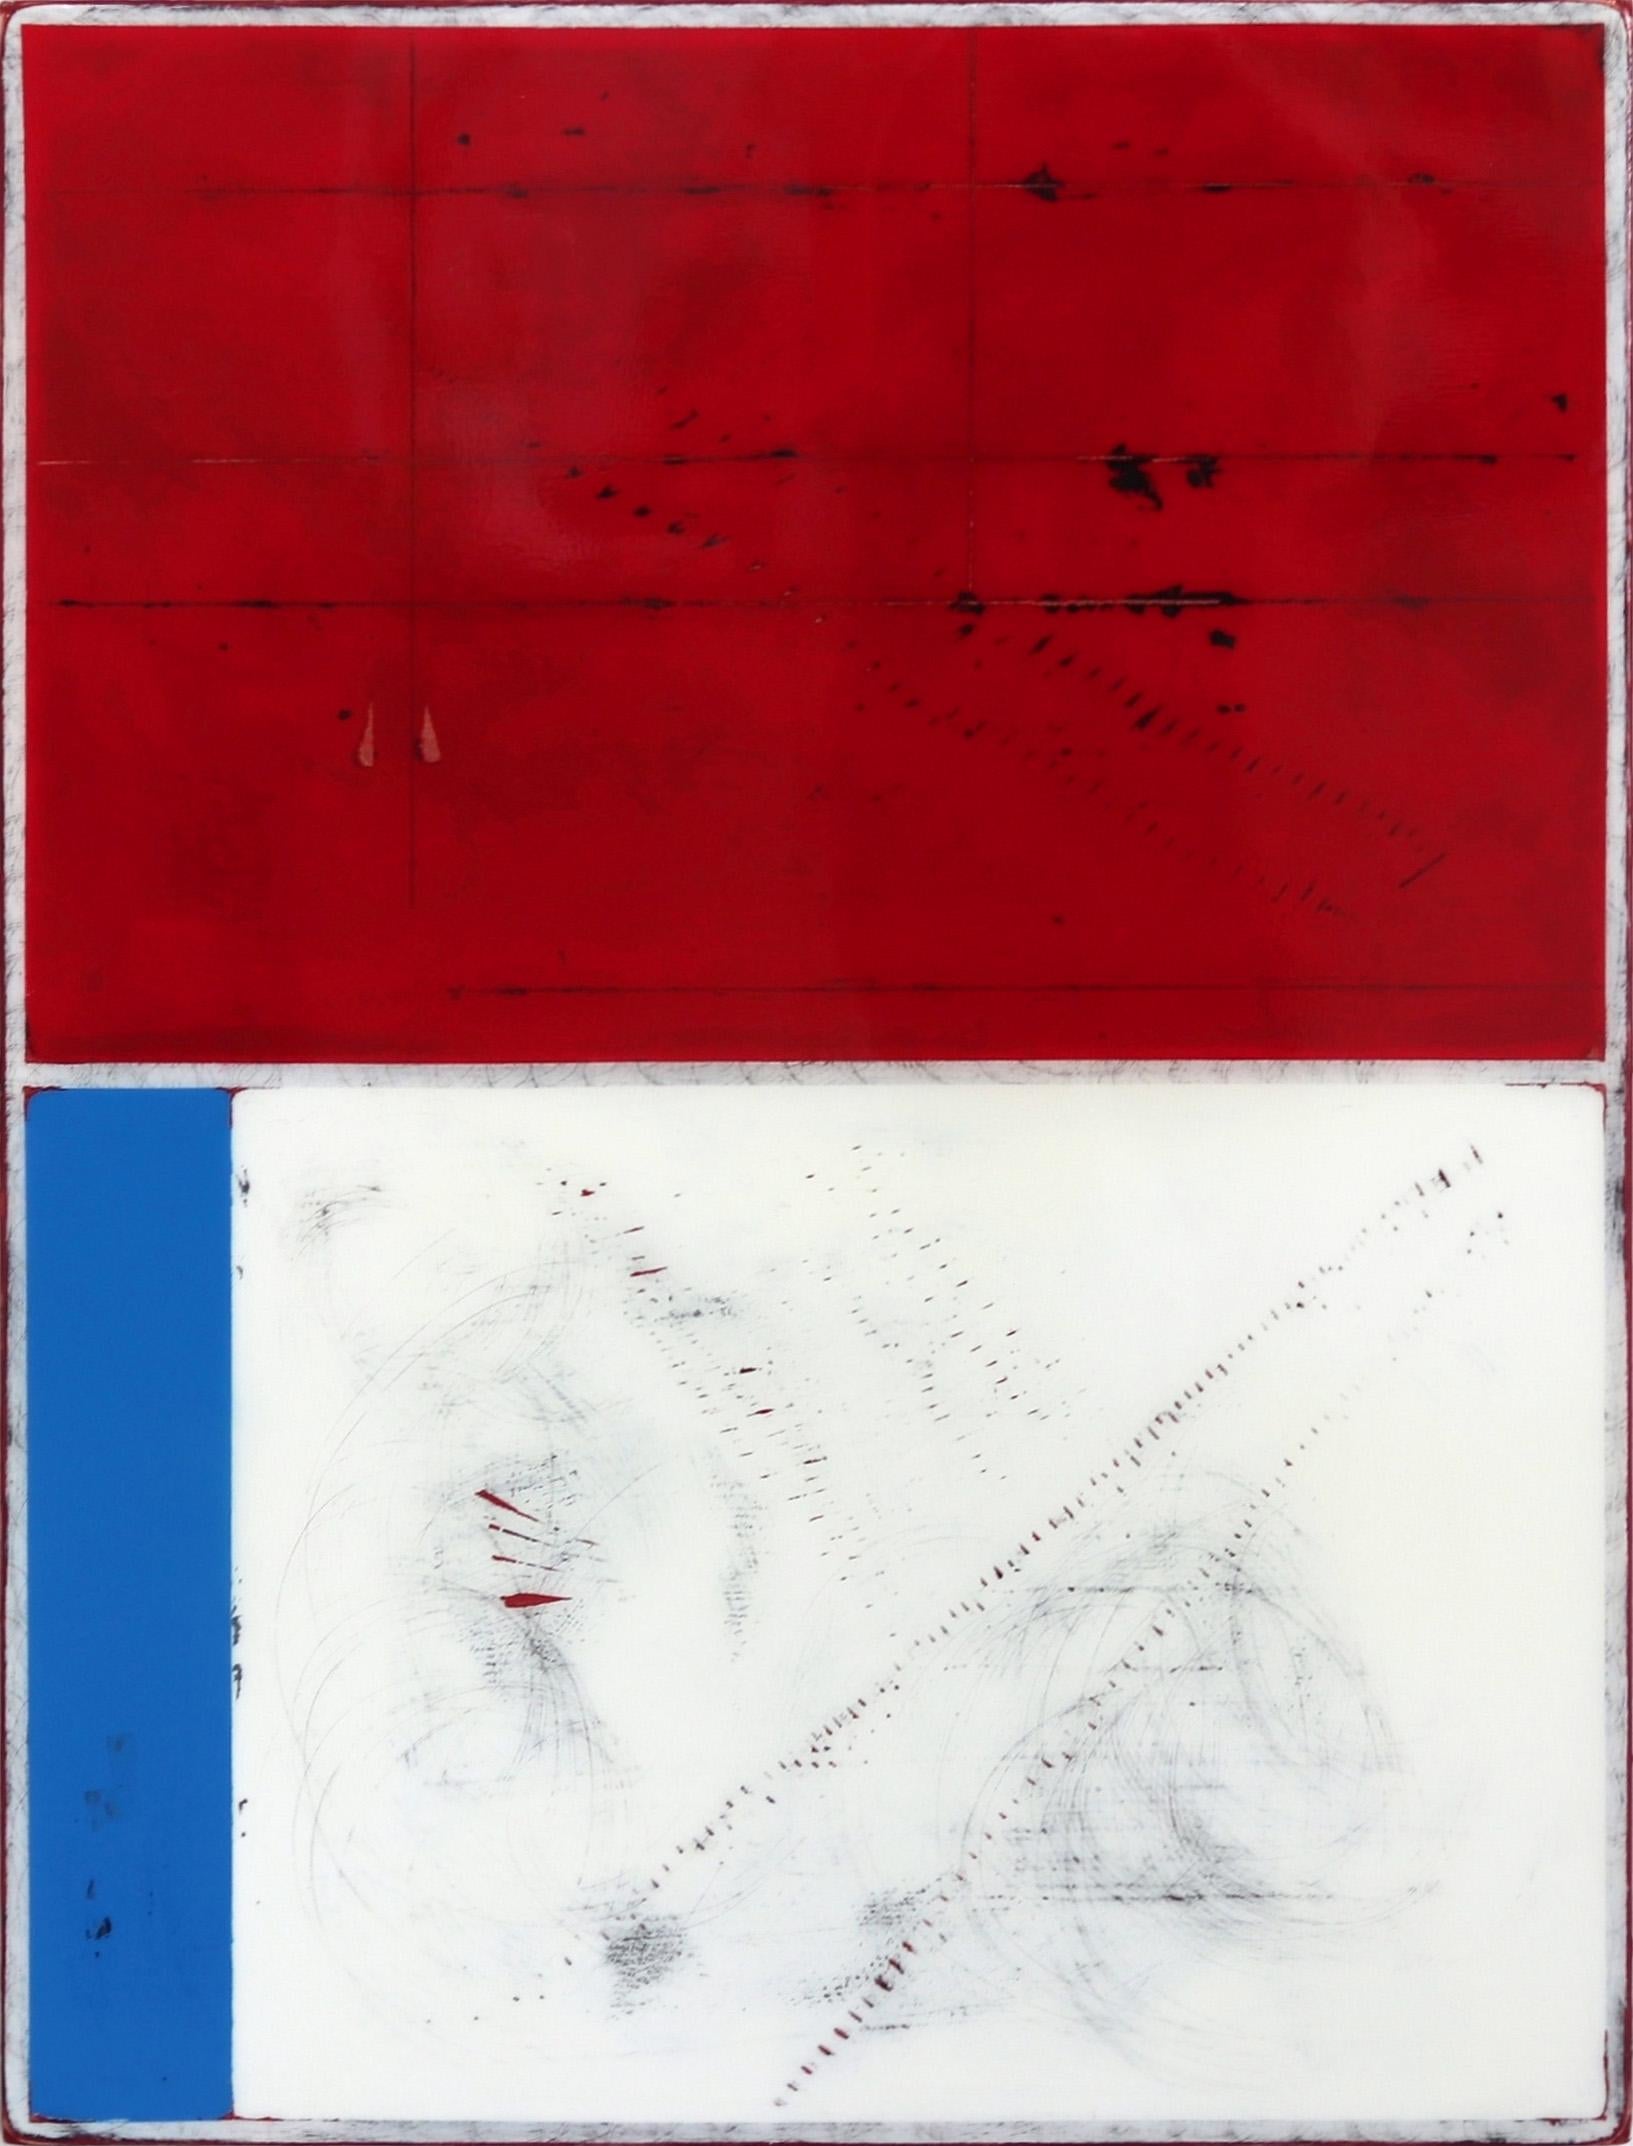 Ré résolution 1 - œuvre d'art moderne minimaliste en résine acrylique rouge, blanche et bleue